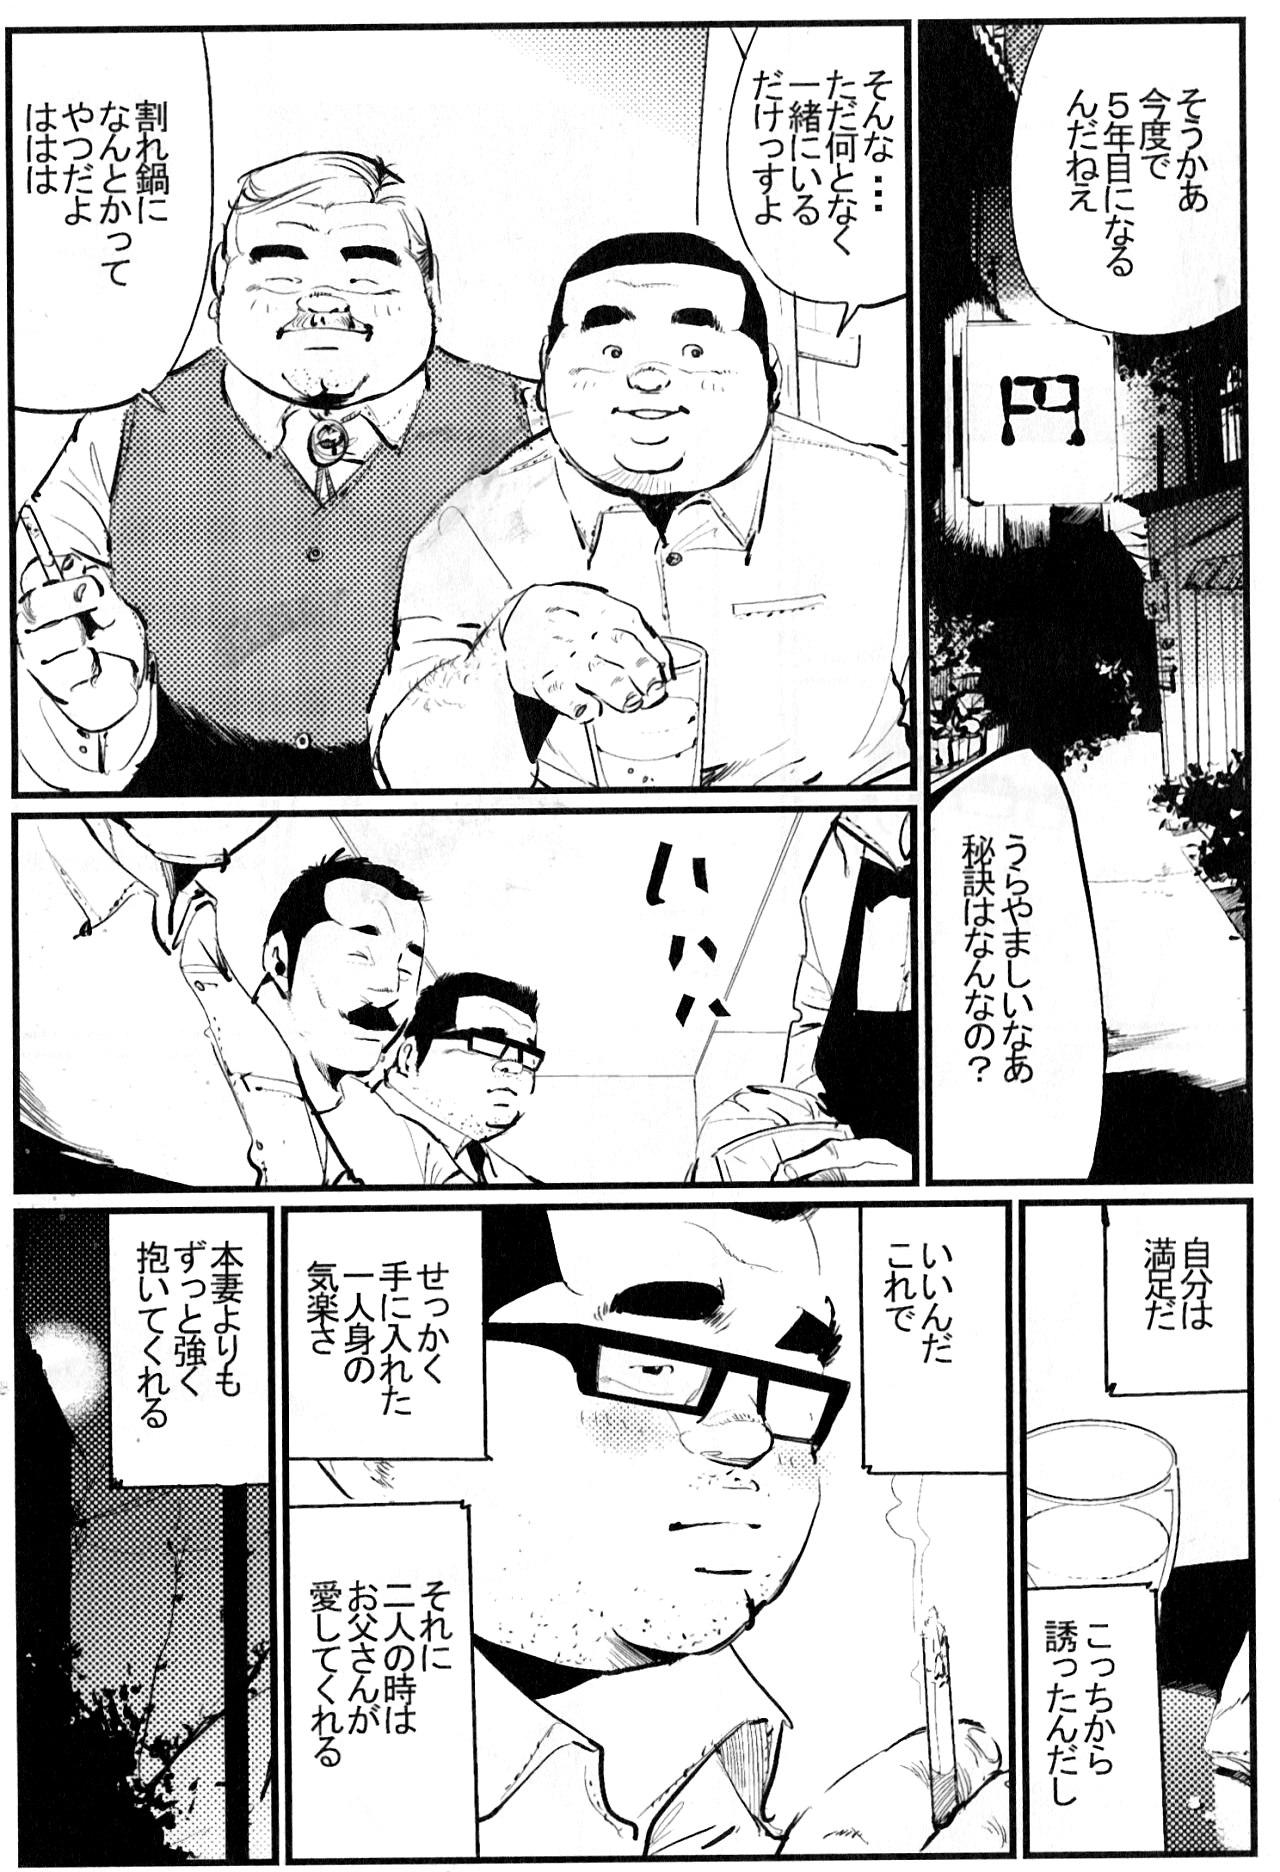 Chat Oshidori sake Dominant - Page 5